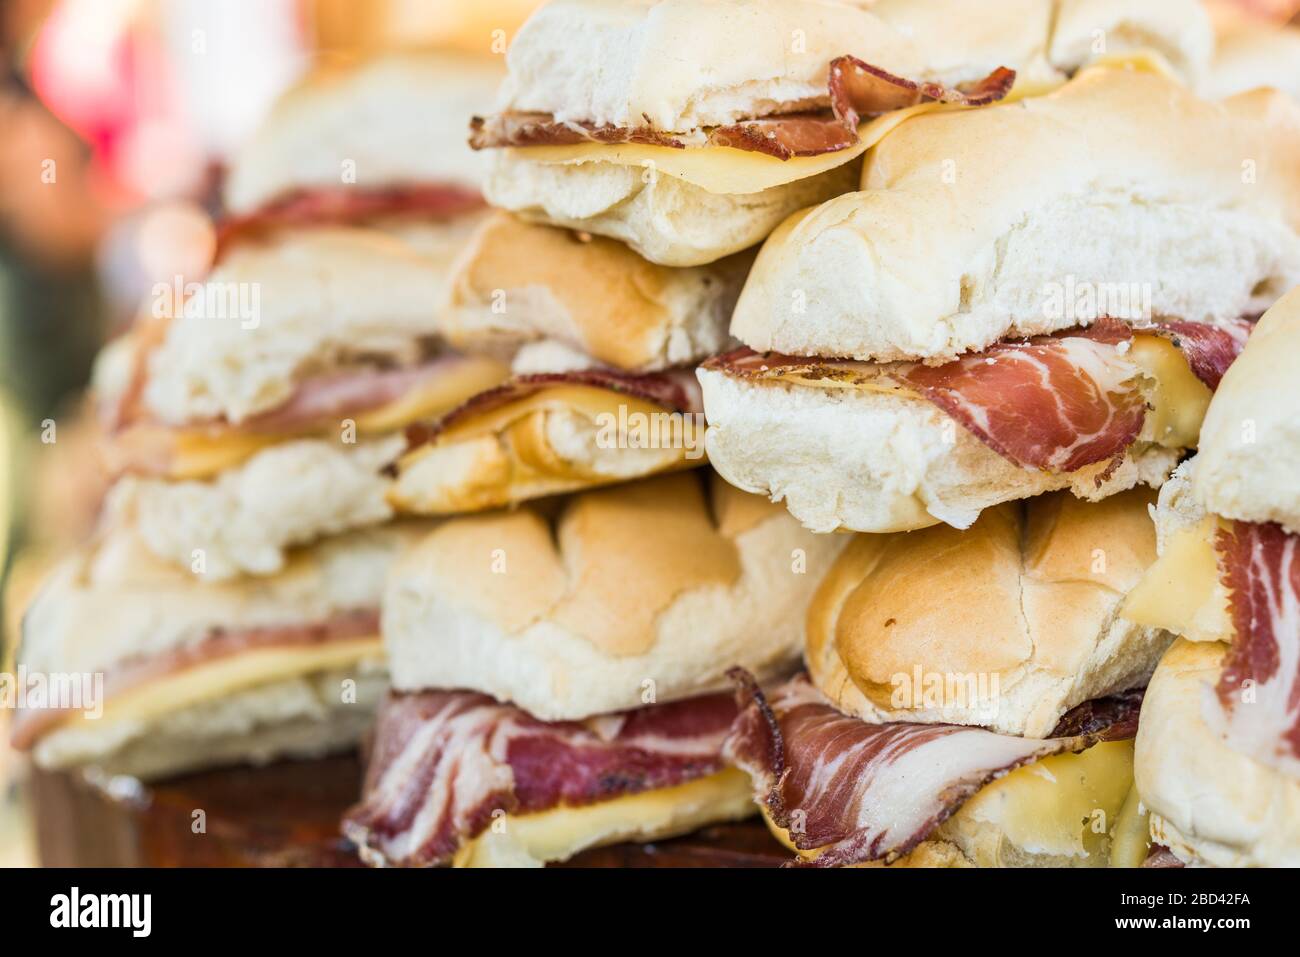 Sandwichs au jambon serrano au fromage et au jamon sur un marché de la nourriture de rue. Banque D'Images